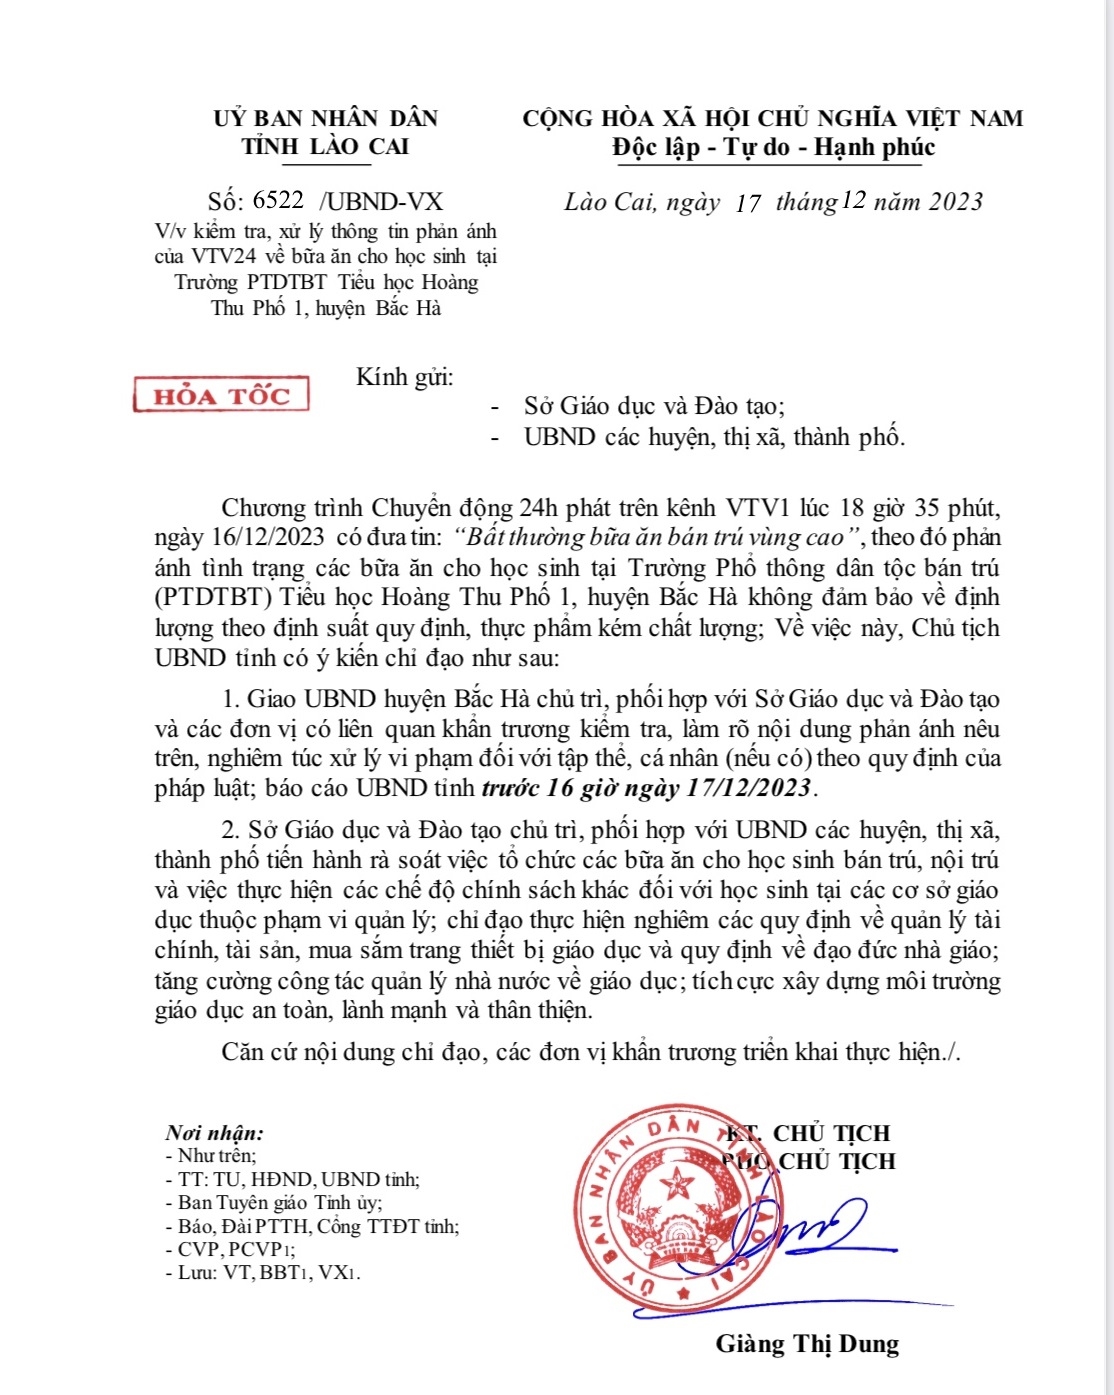 Công văn khẩn của tỉnh Lào CaI sáng ngày 17/12